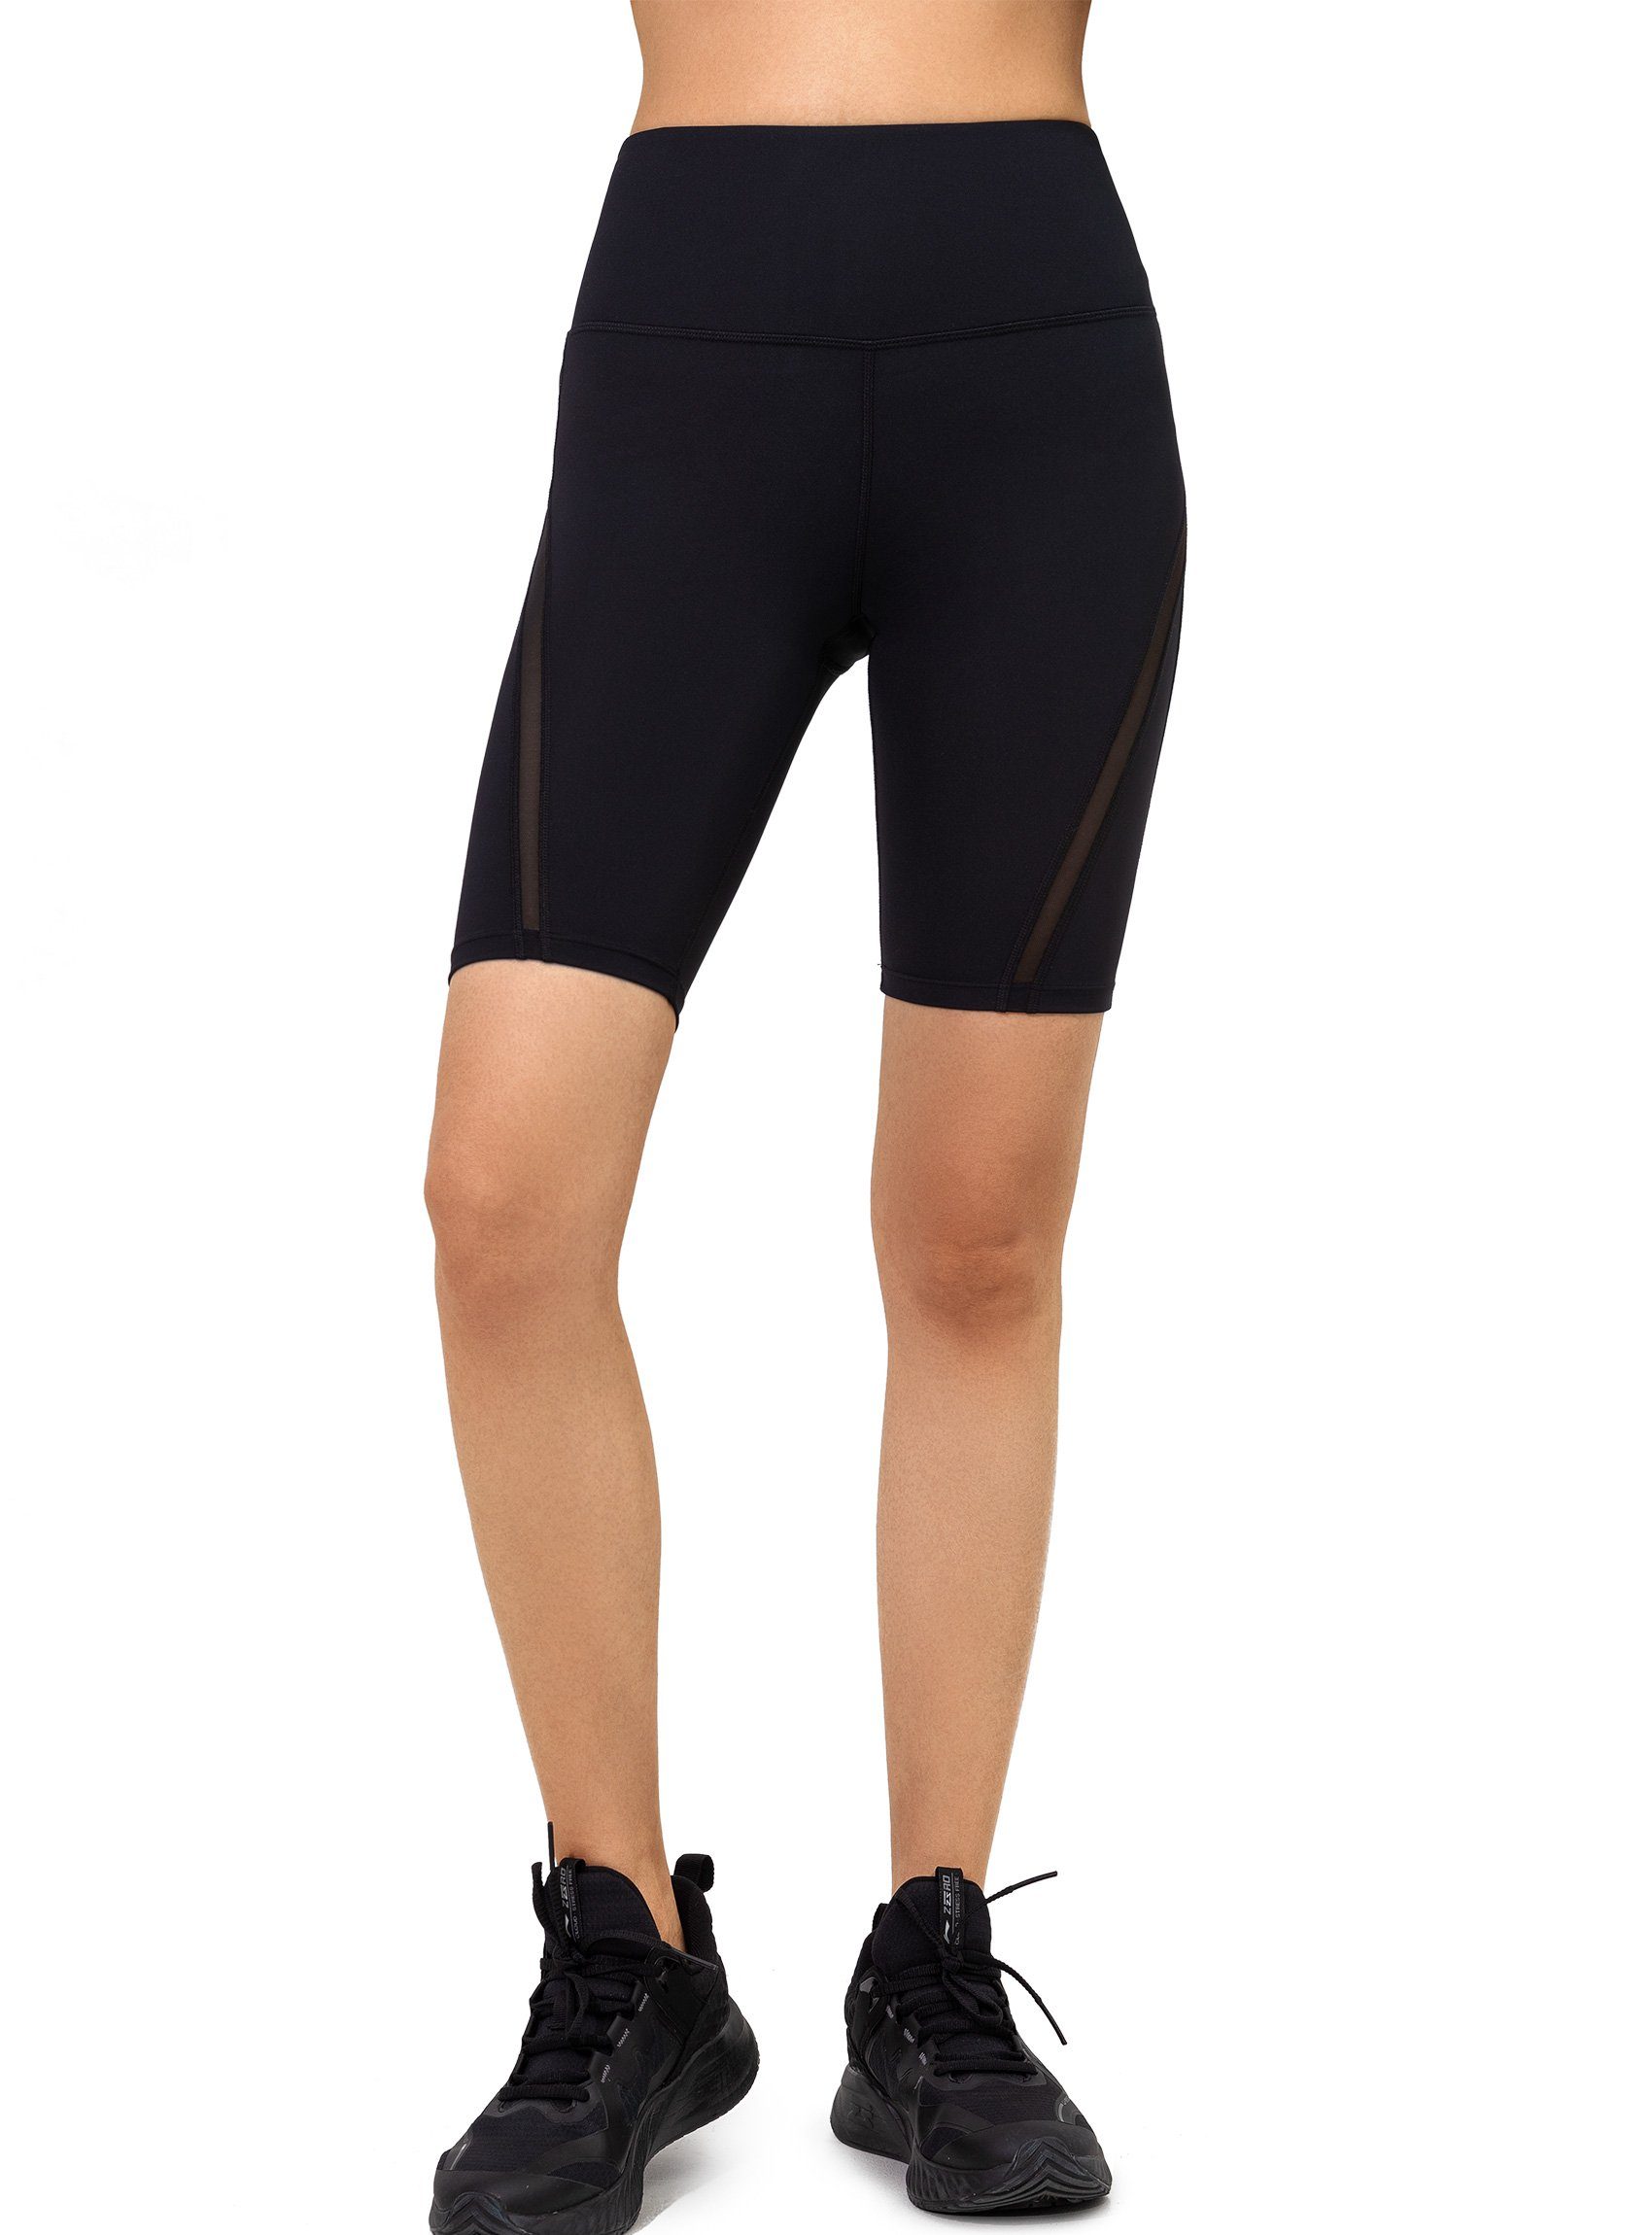 Yvette Radlerhose kurz Sport leggings für Damen, Radler E110420C27 Sporthose